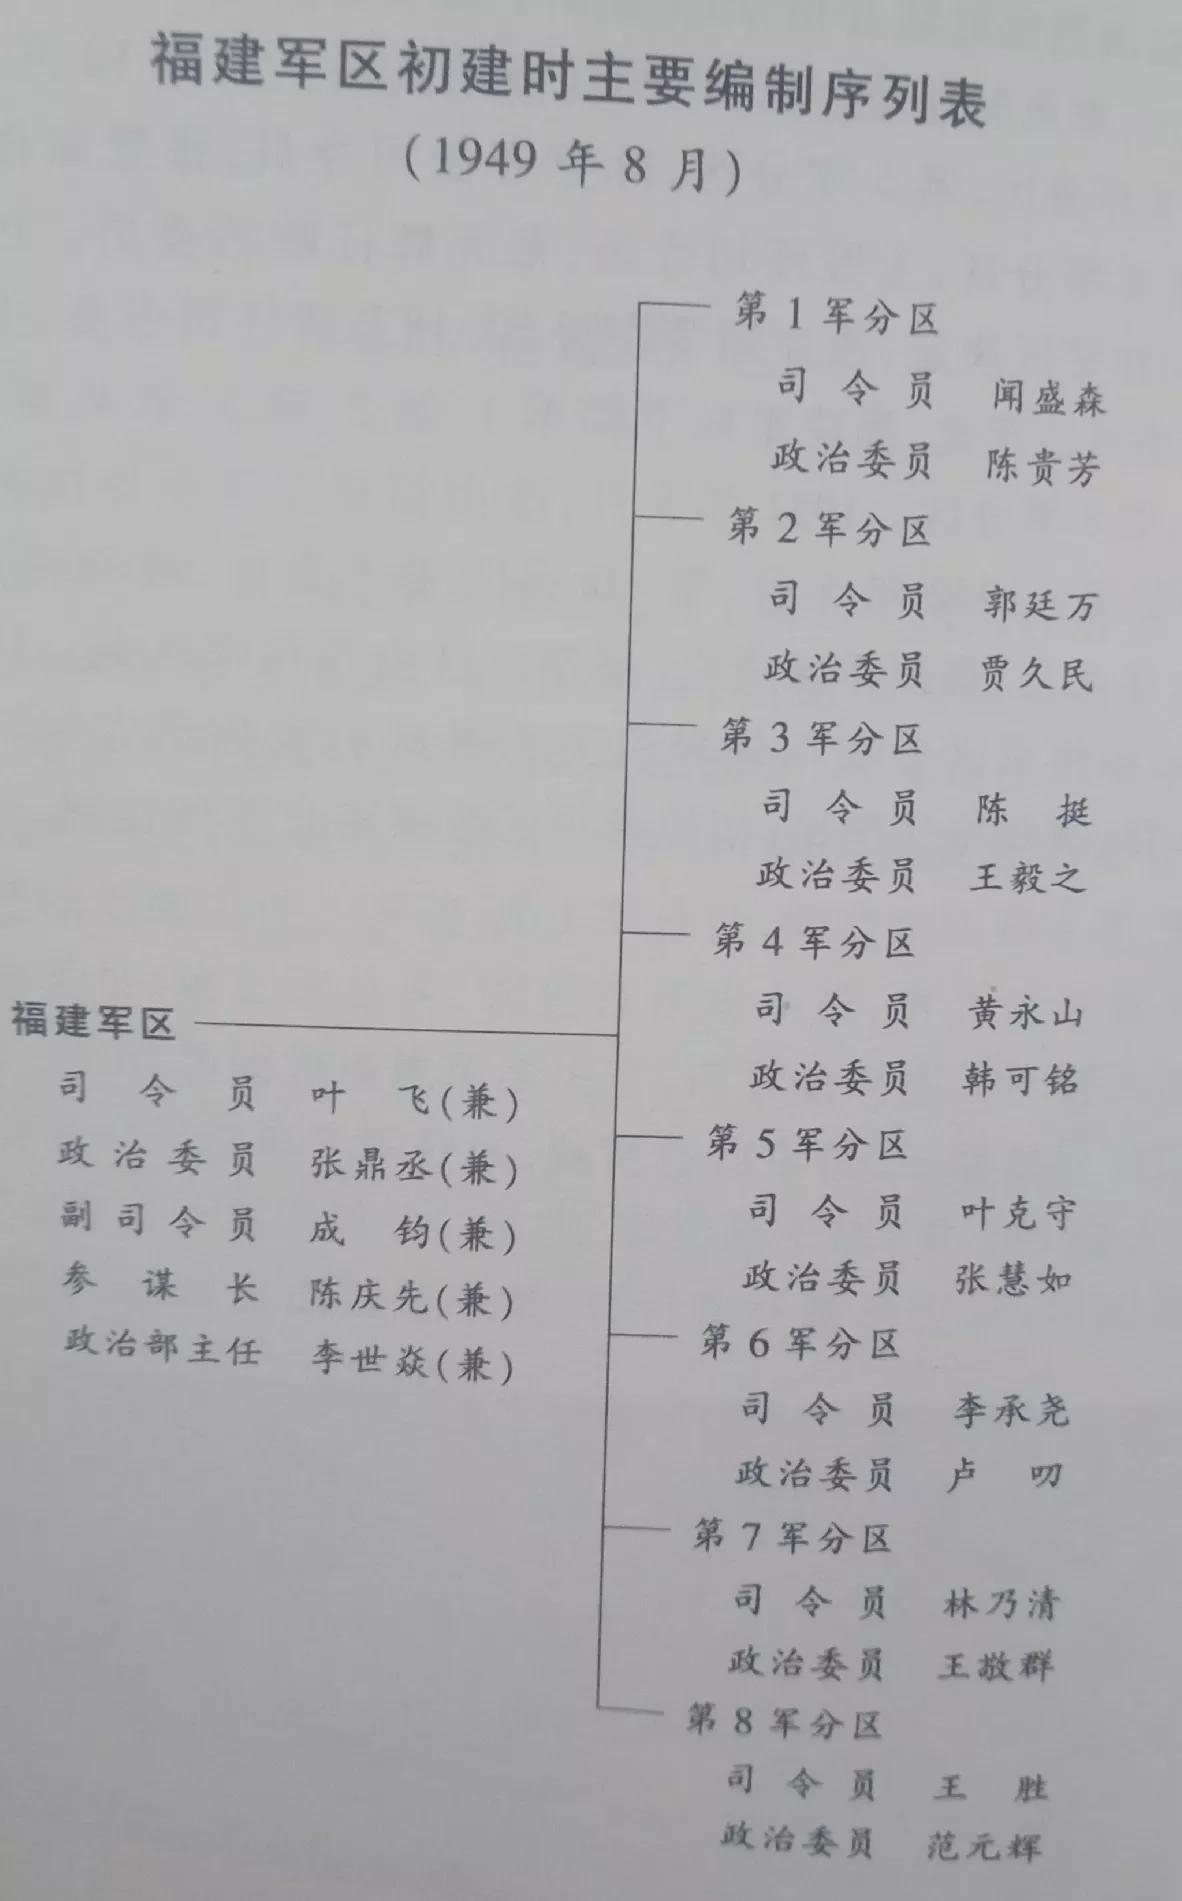 福建军区(详述1955年9月福建军区各军分区司令员的授衔)